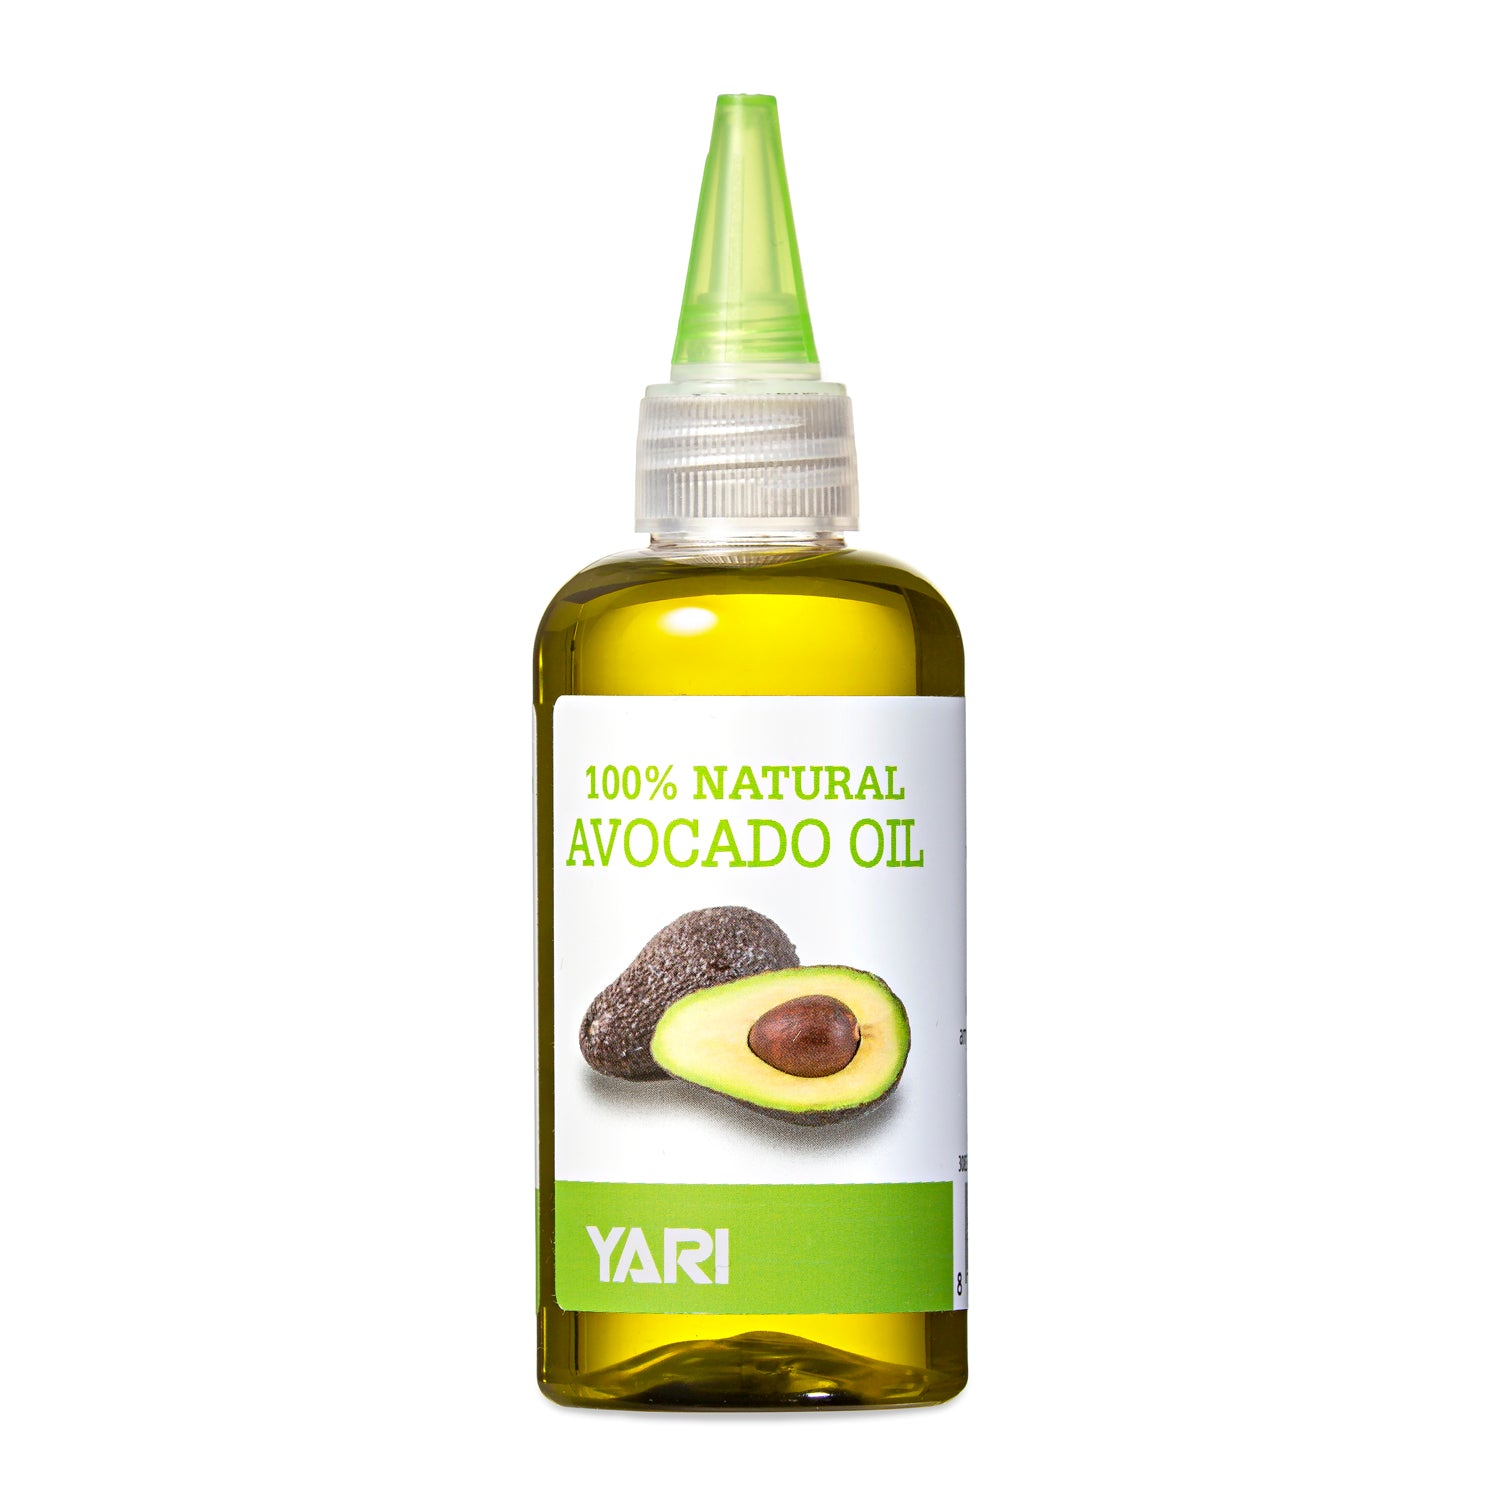 Yari - 100% Natural Avocado Oil 110ml